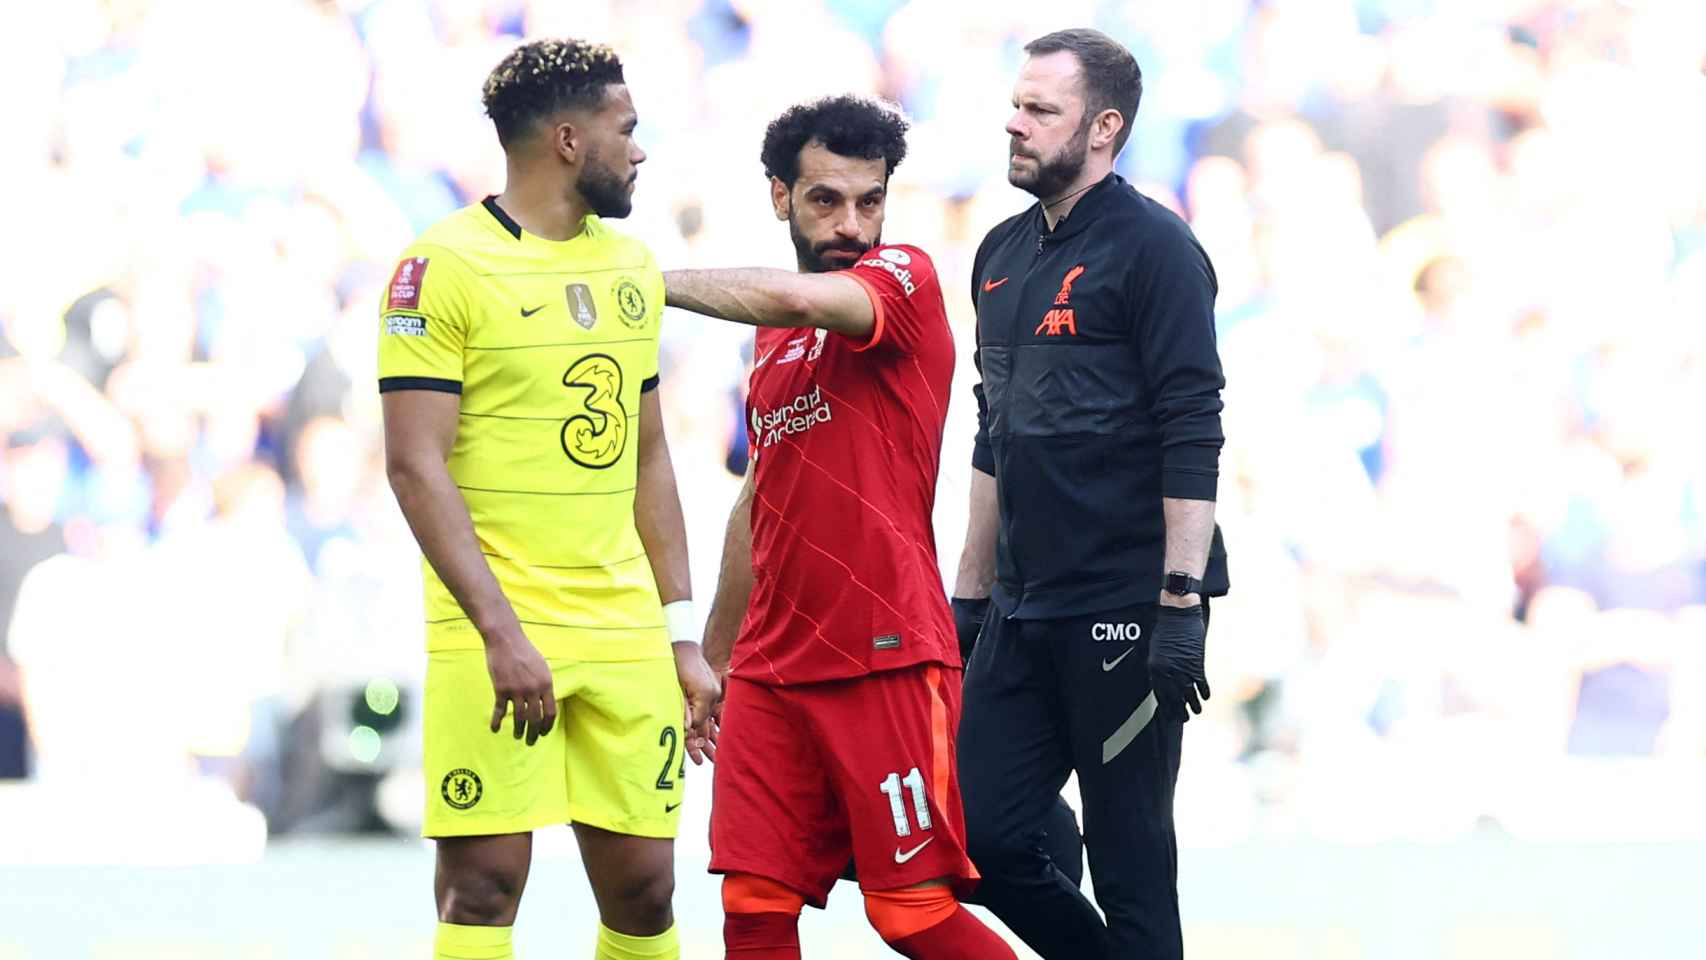 Mohamed Salah se retira lesionado de la final de la FA Cup contra el Chelsea